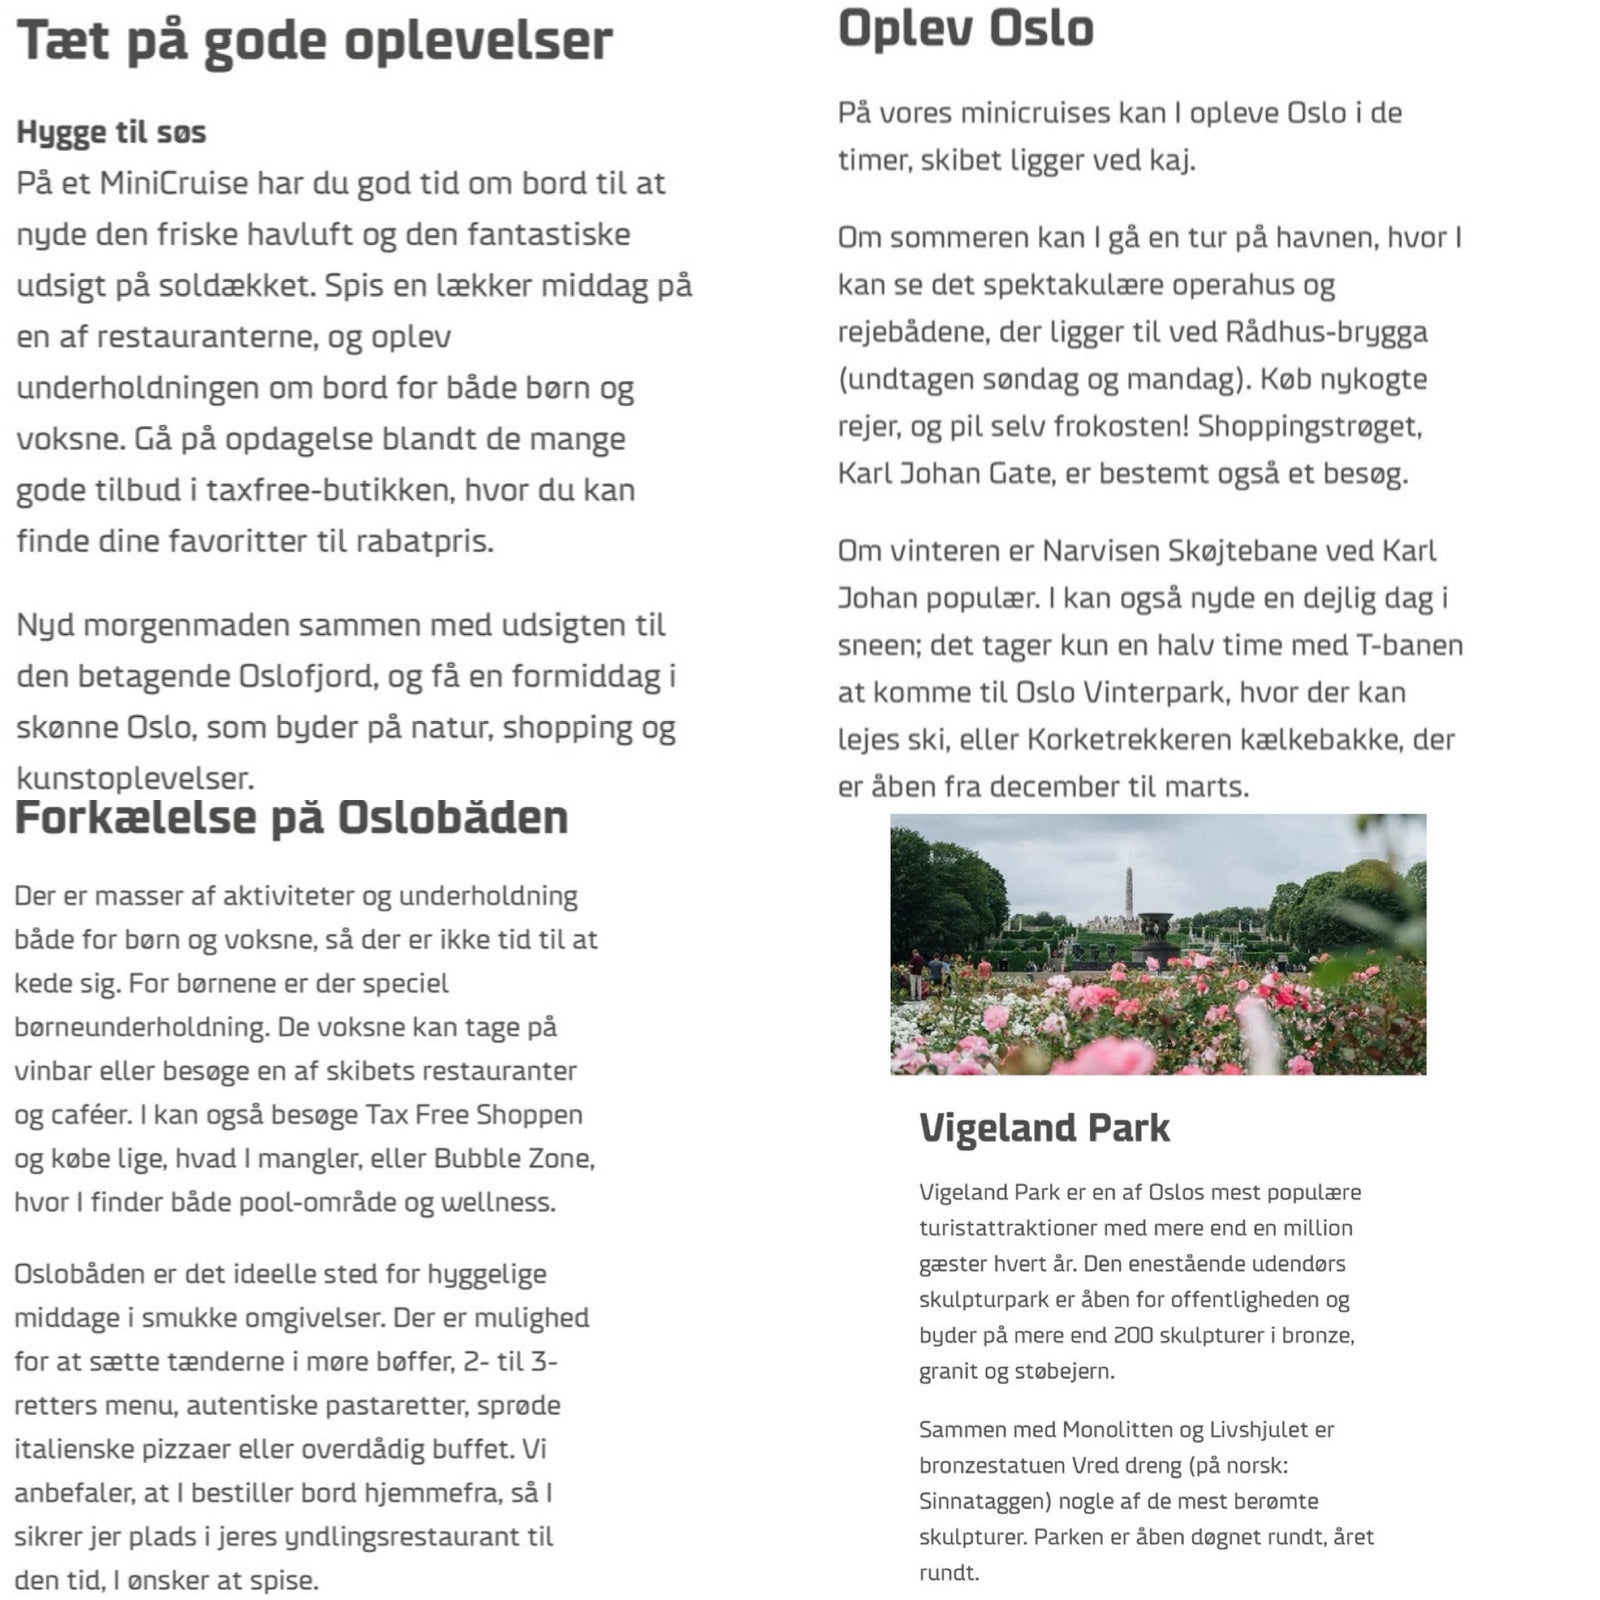 3 digitale gavebevis til Oslo Minicruise med af...